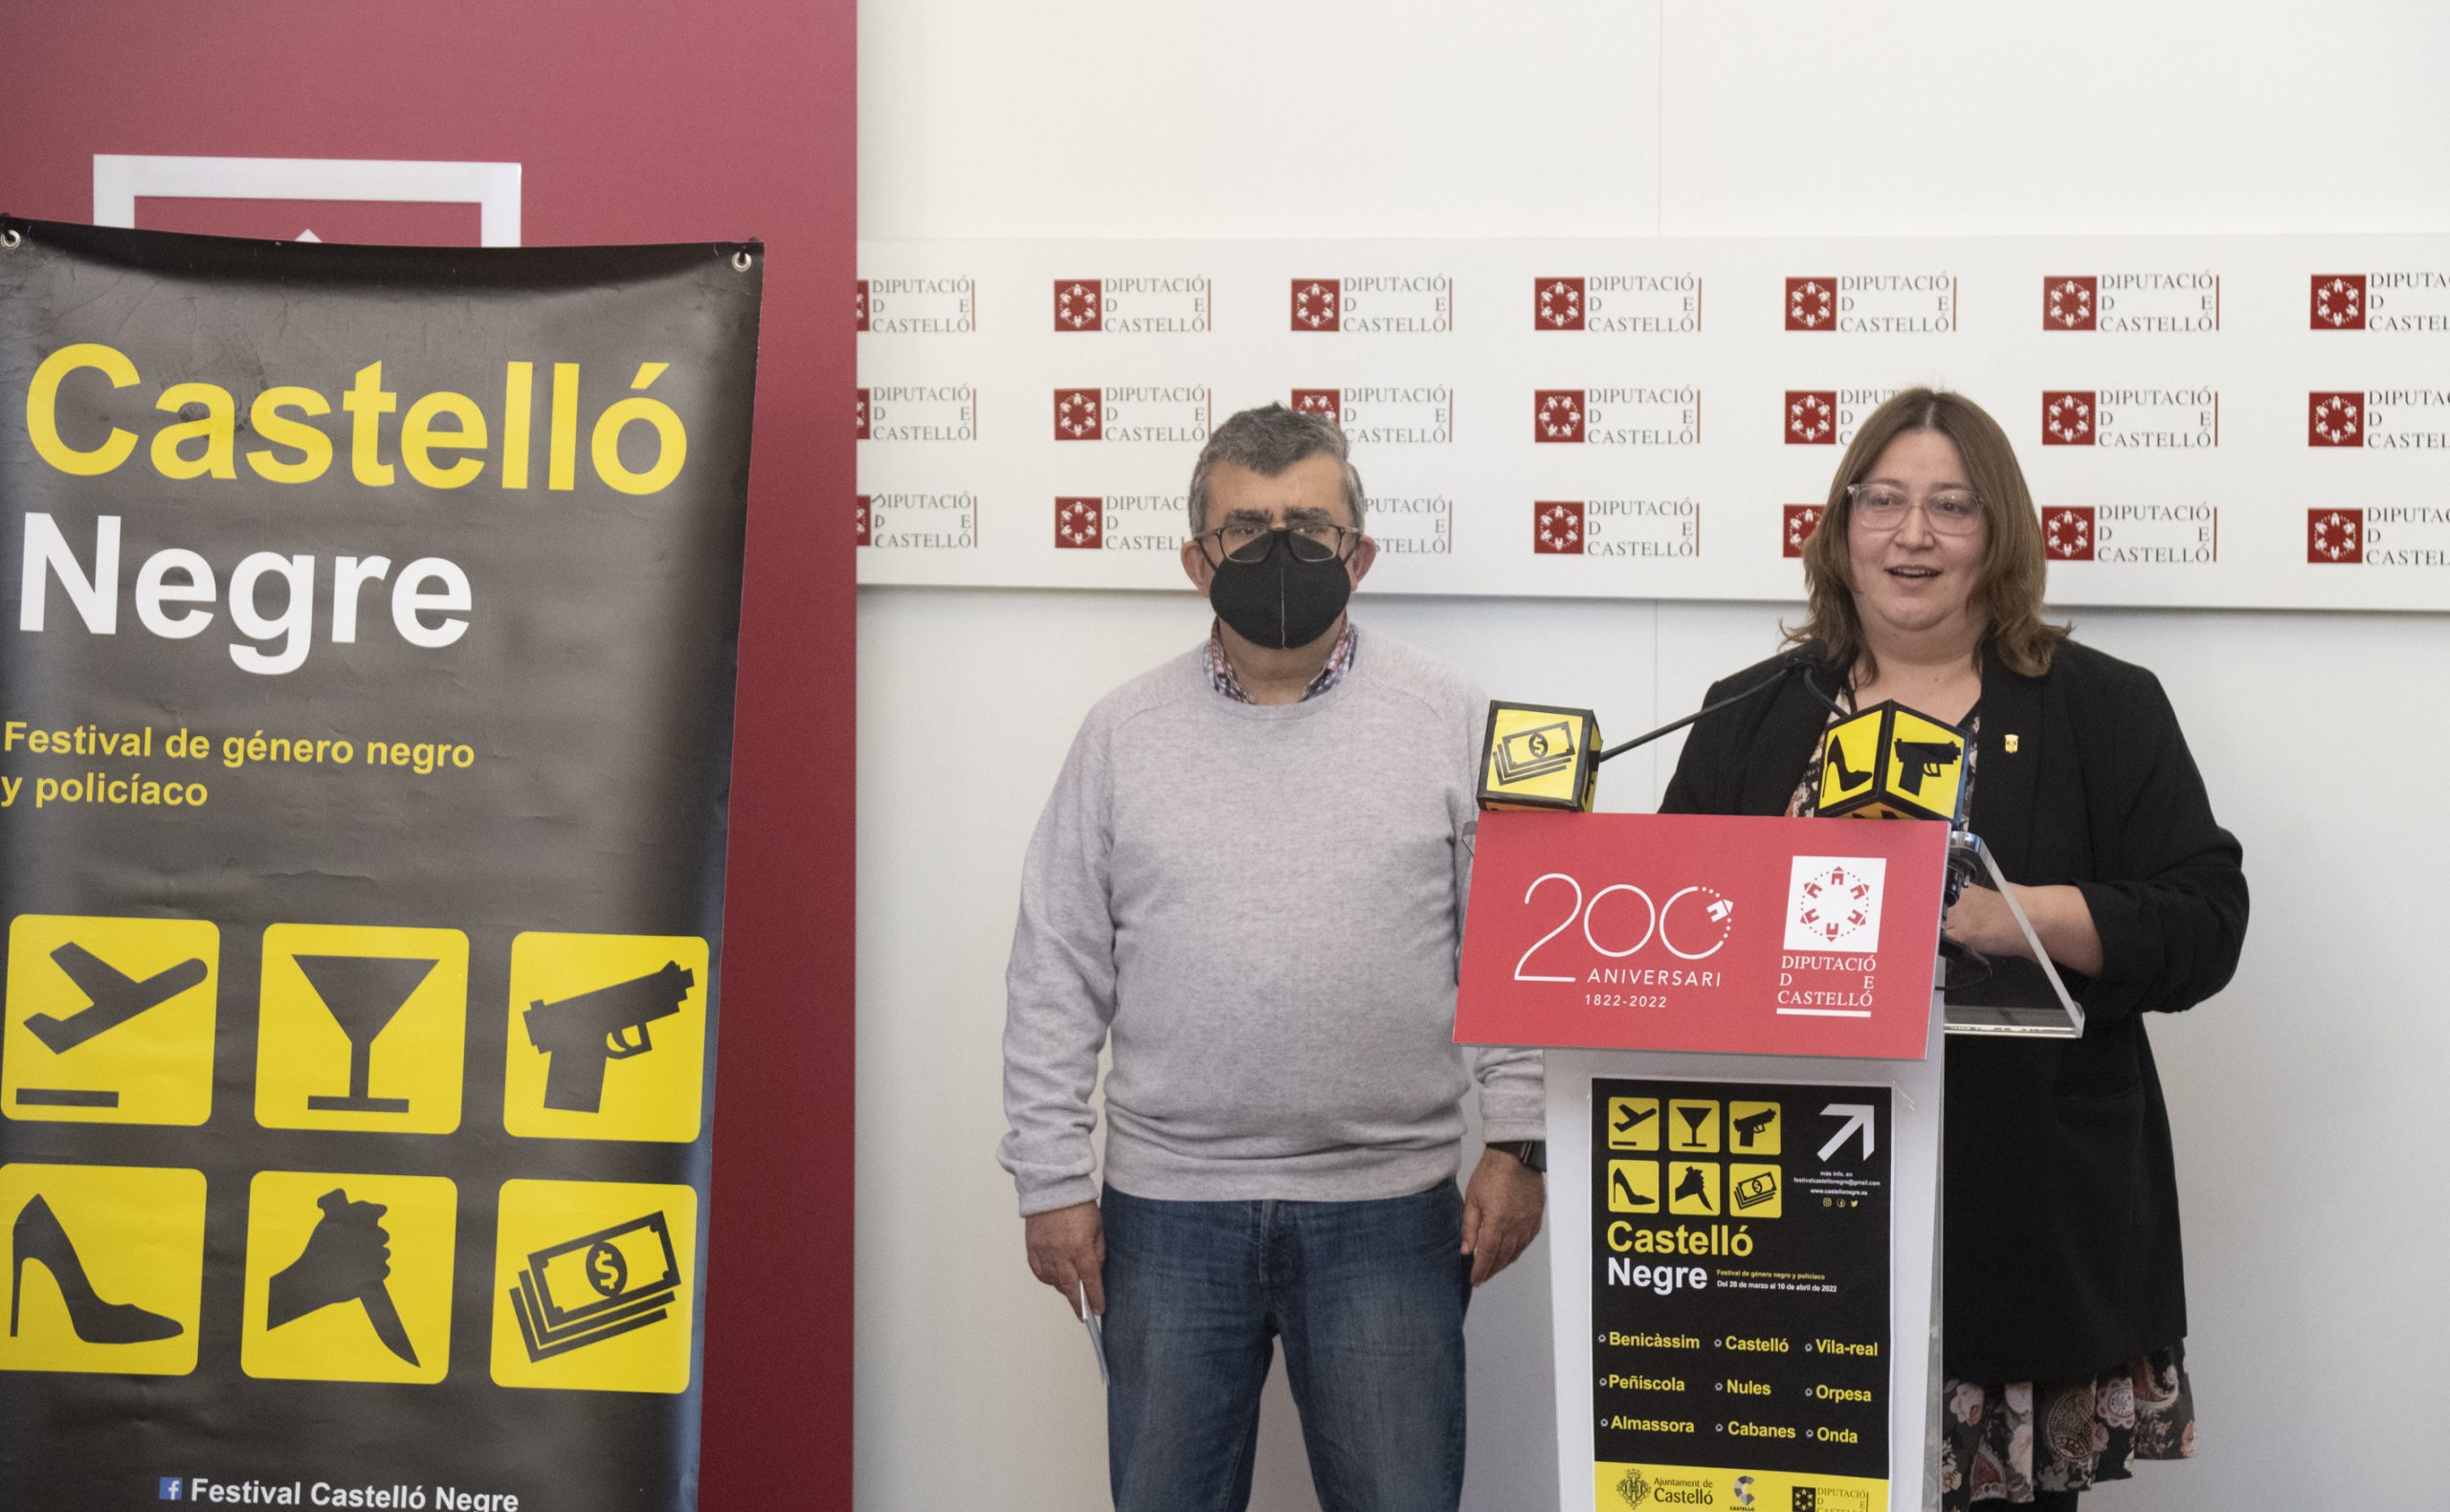 La Diputación de Castellón acerca la decimotercera edición del festival Castelló Negre a nueve municipios de la provincia